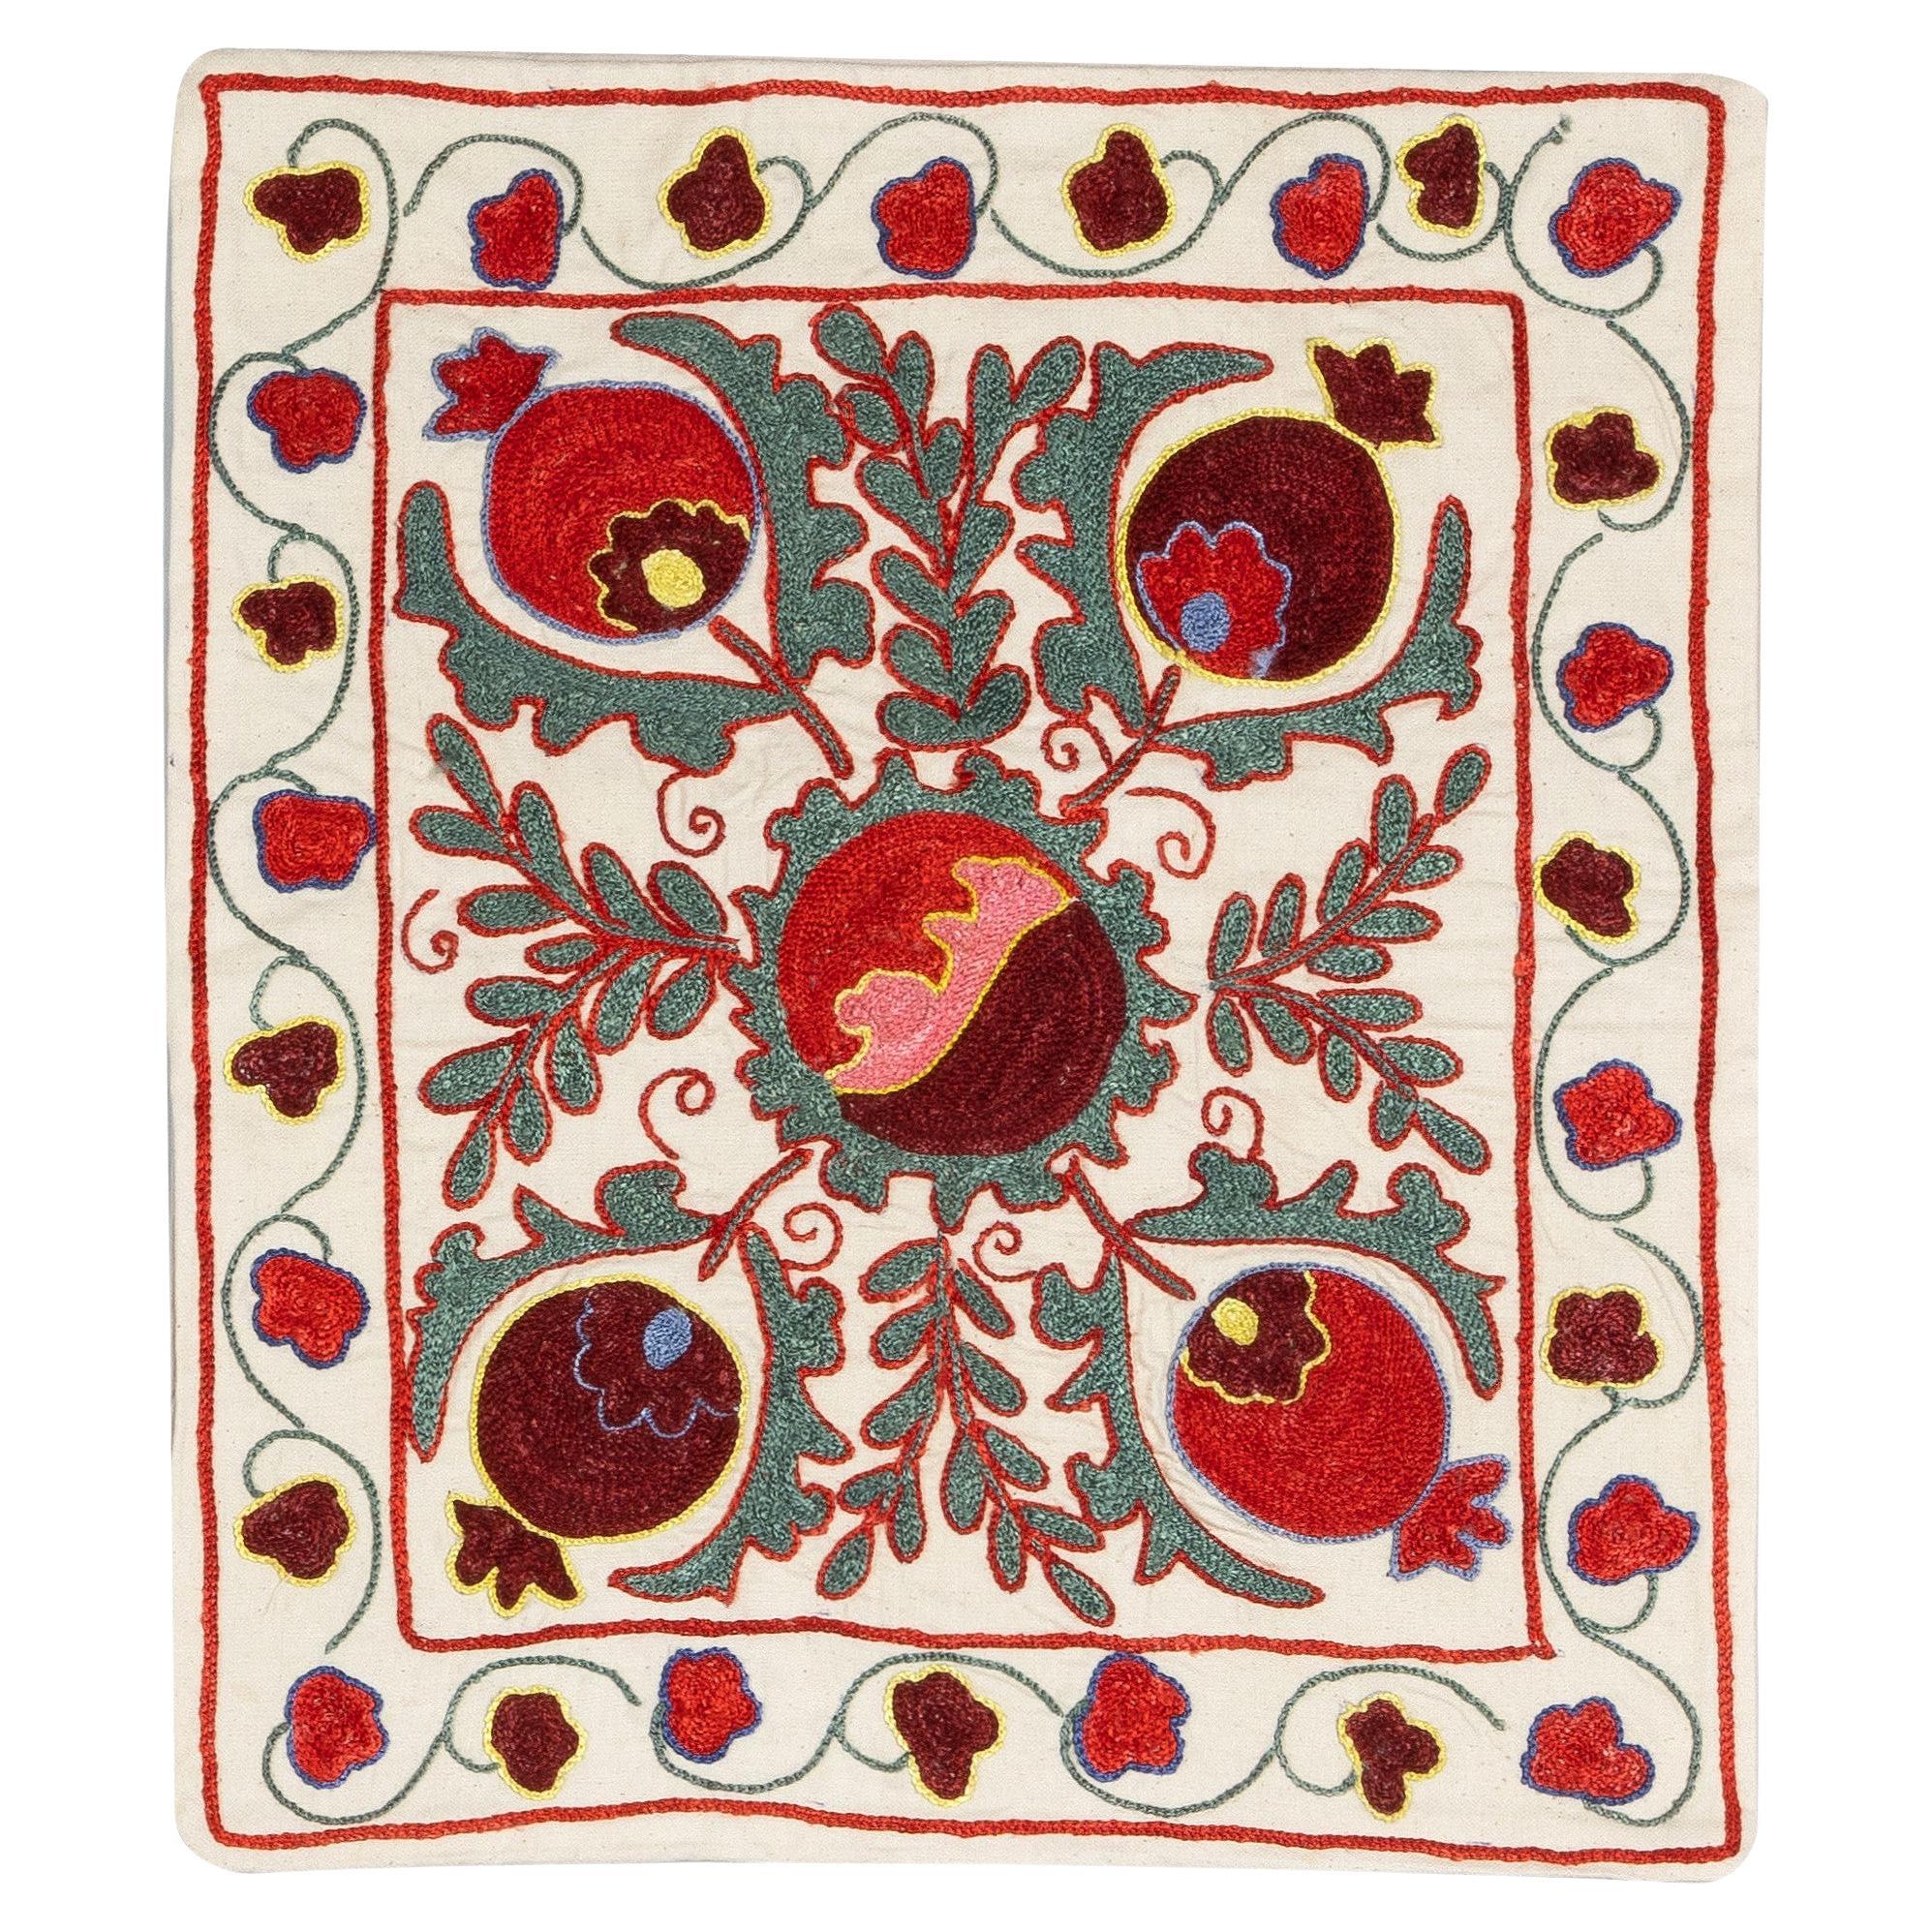 19 "x19" Dekorative Seidenbestickte Suzani-Kissenhülle in Rot, Grün und Creme